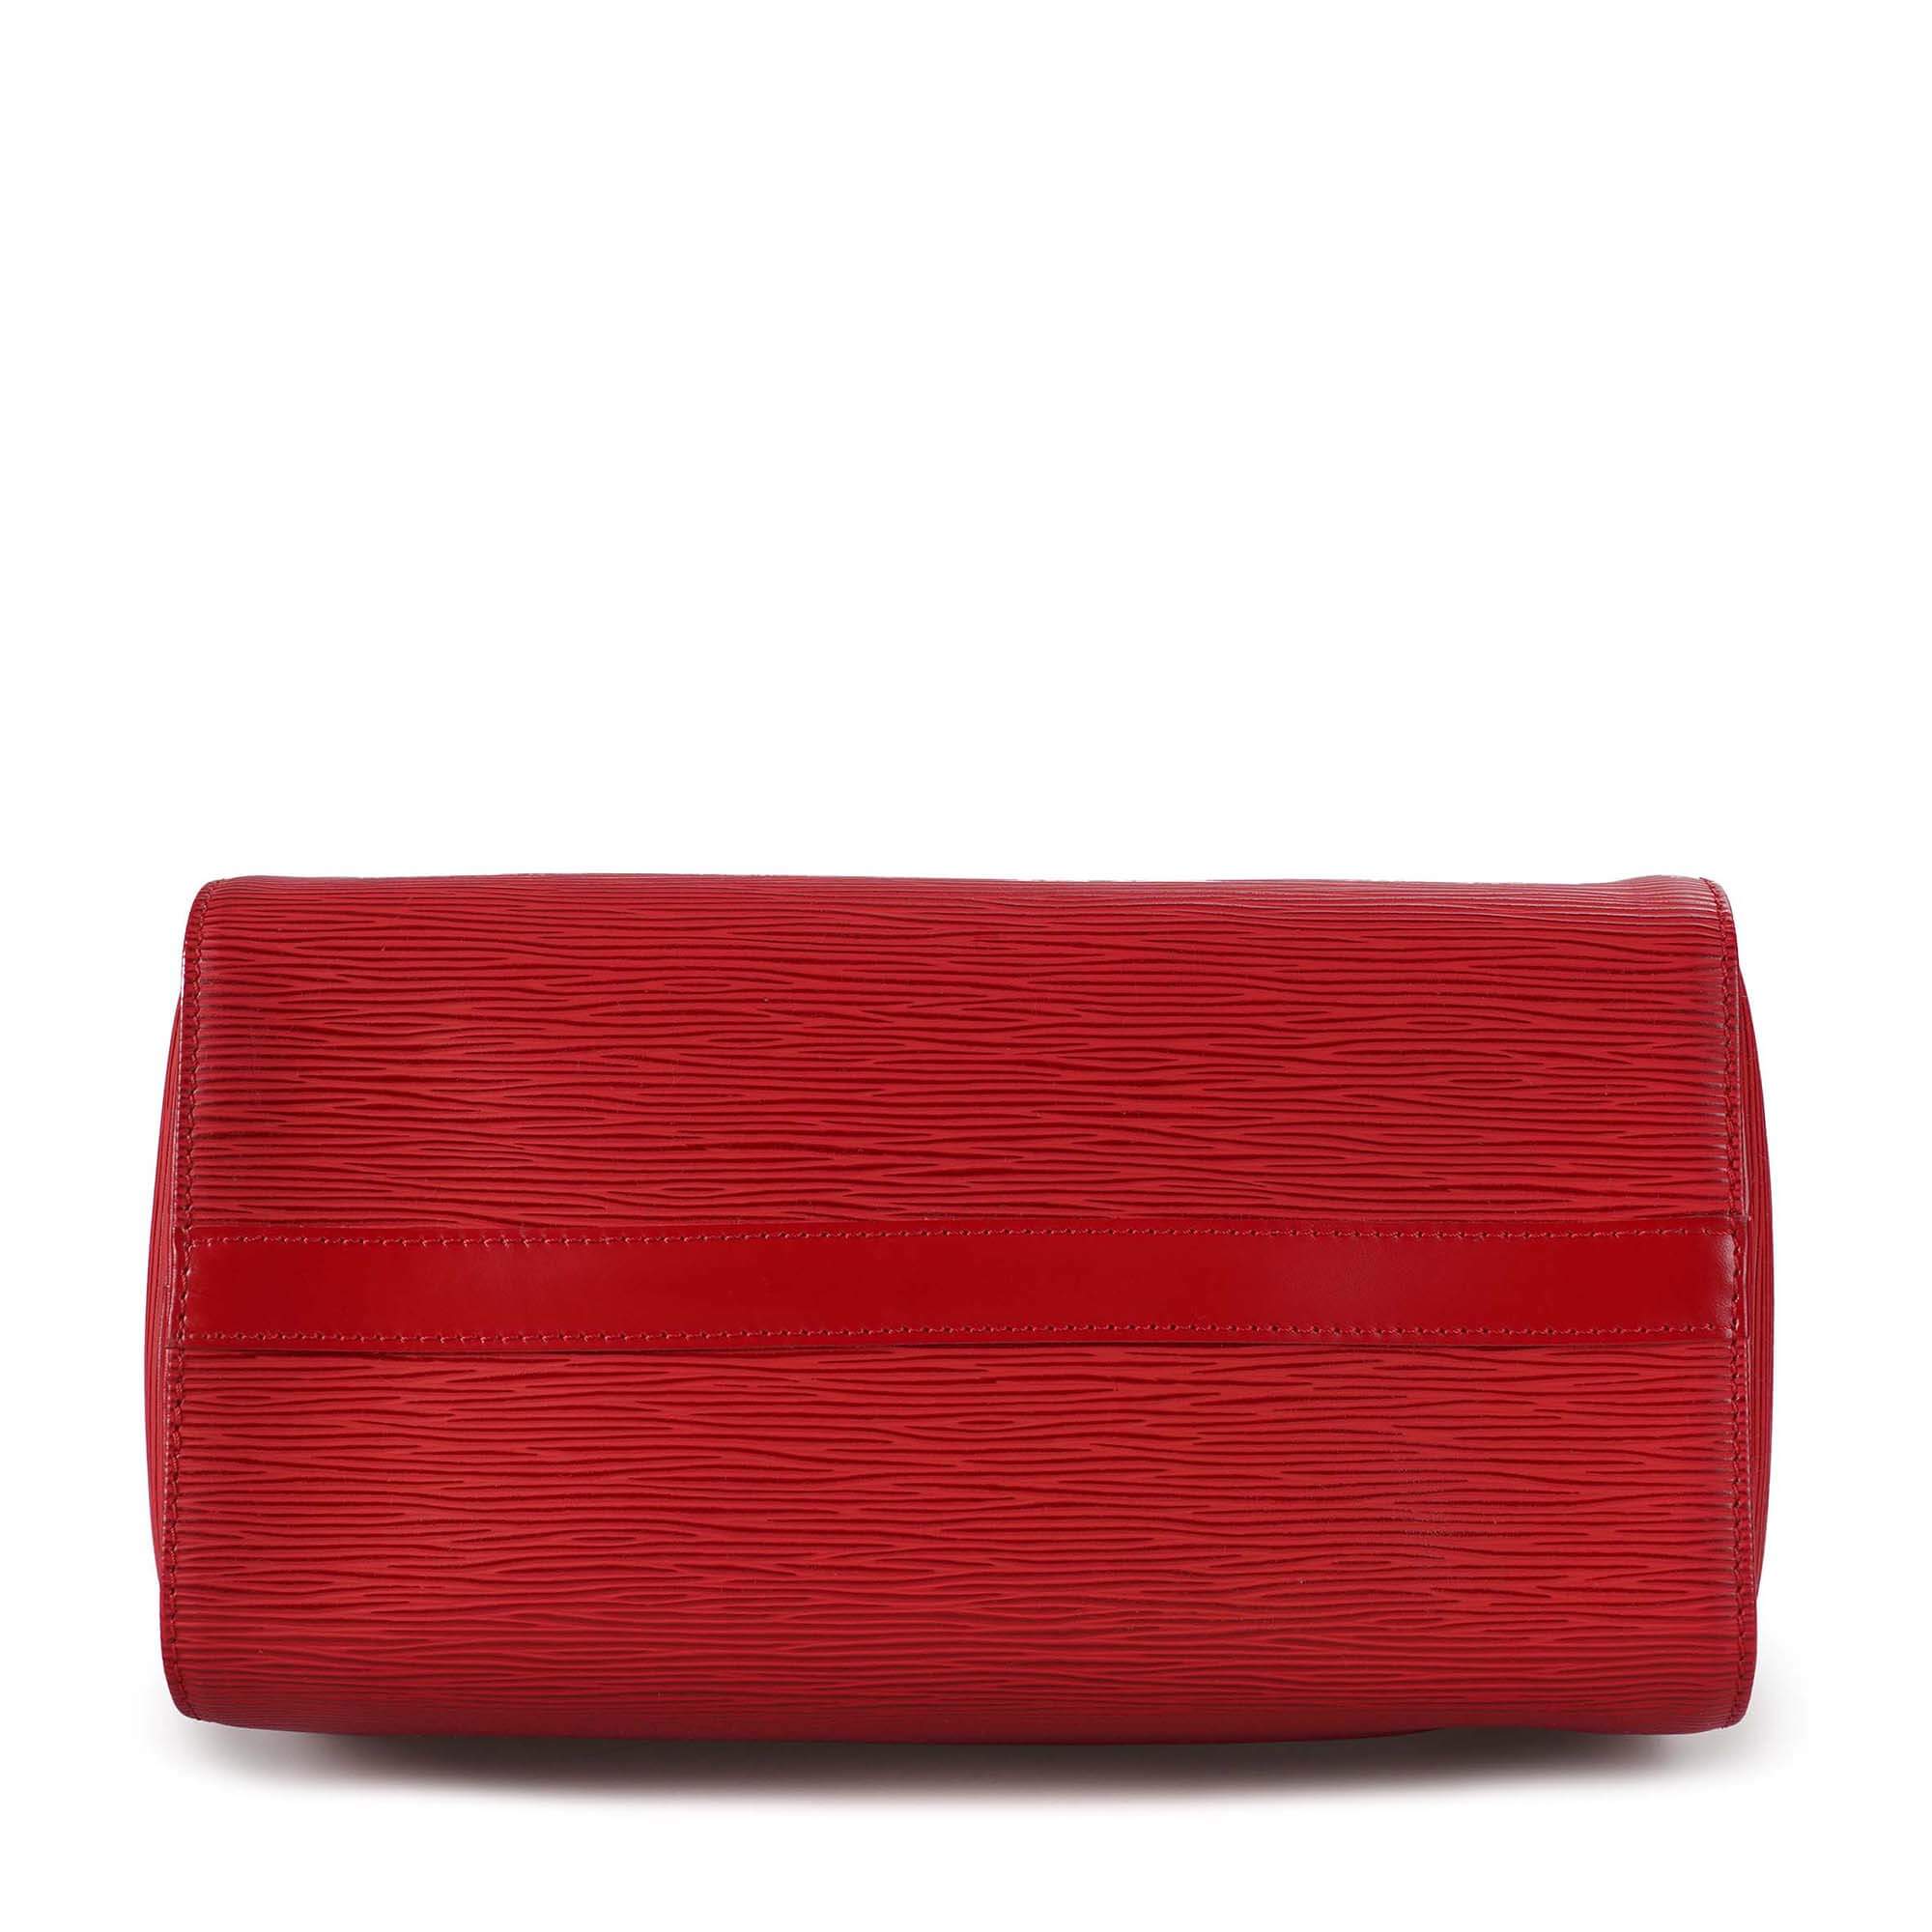 Louis Vuitton - Red Epi Leather Speedy 25 Bag 